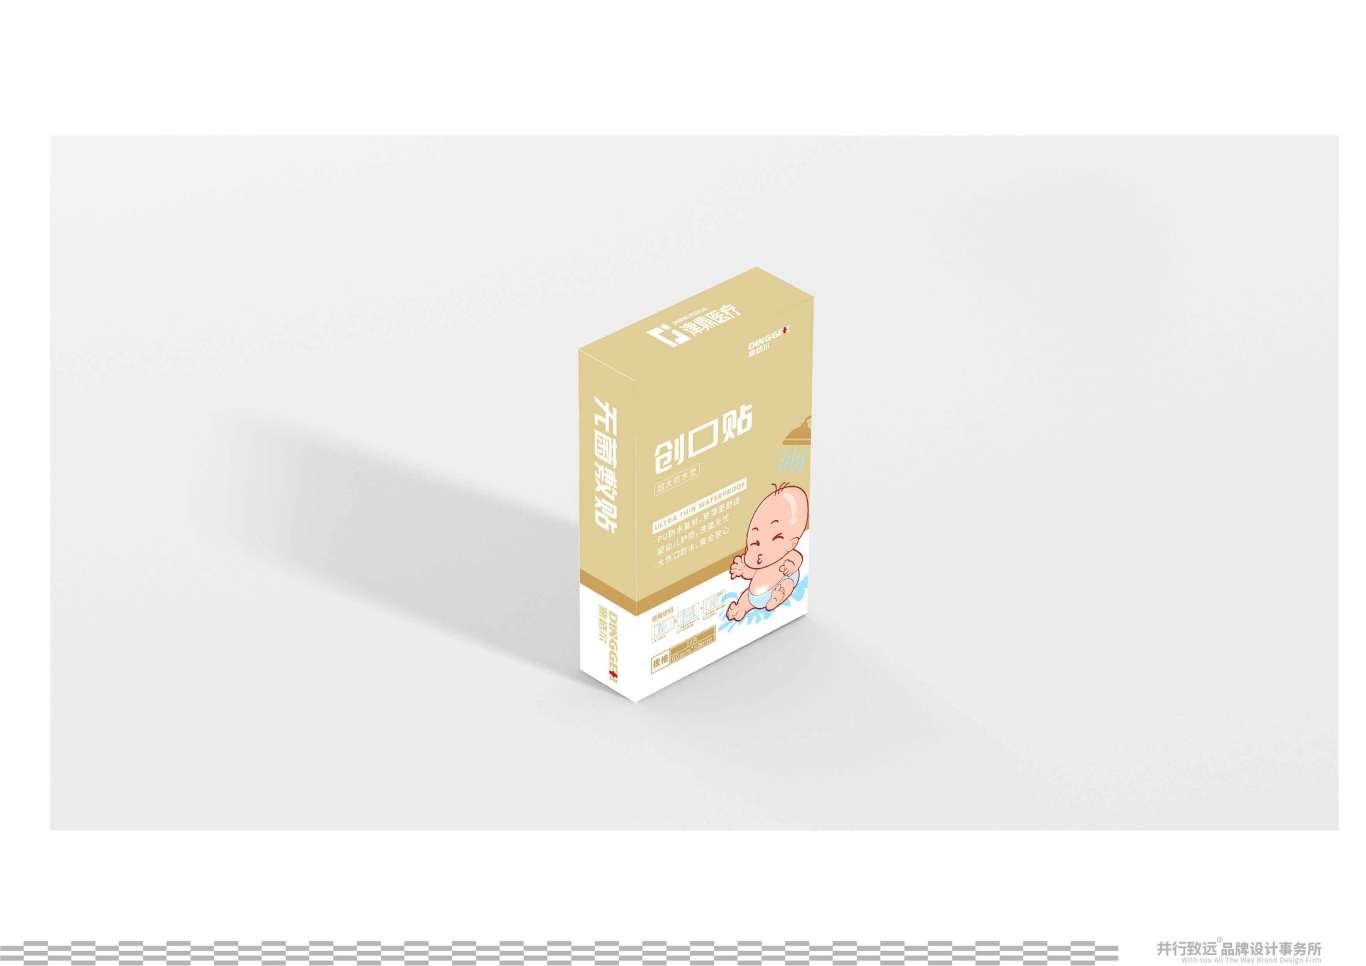 鼎格爾品牌創口貼系列包裝設計圖6